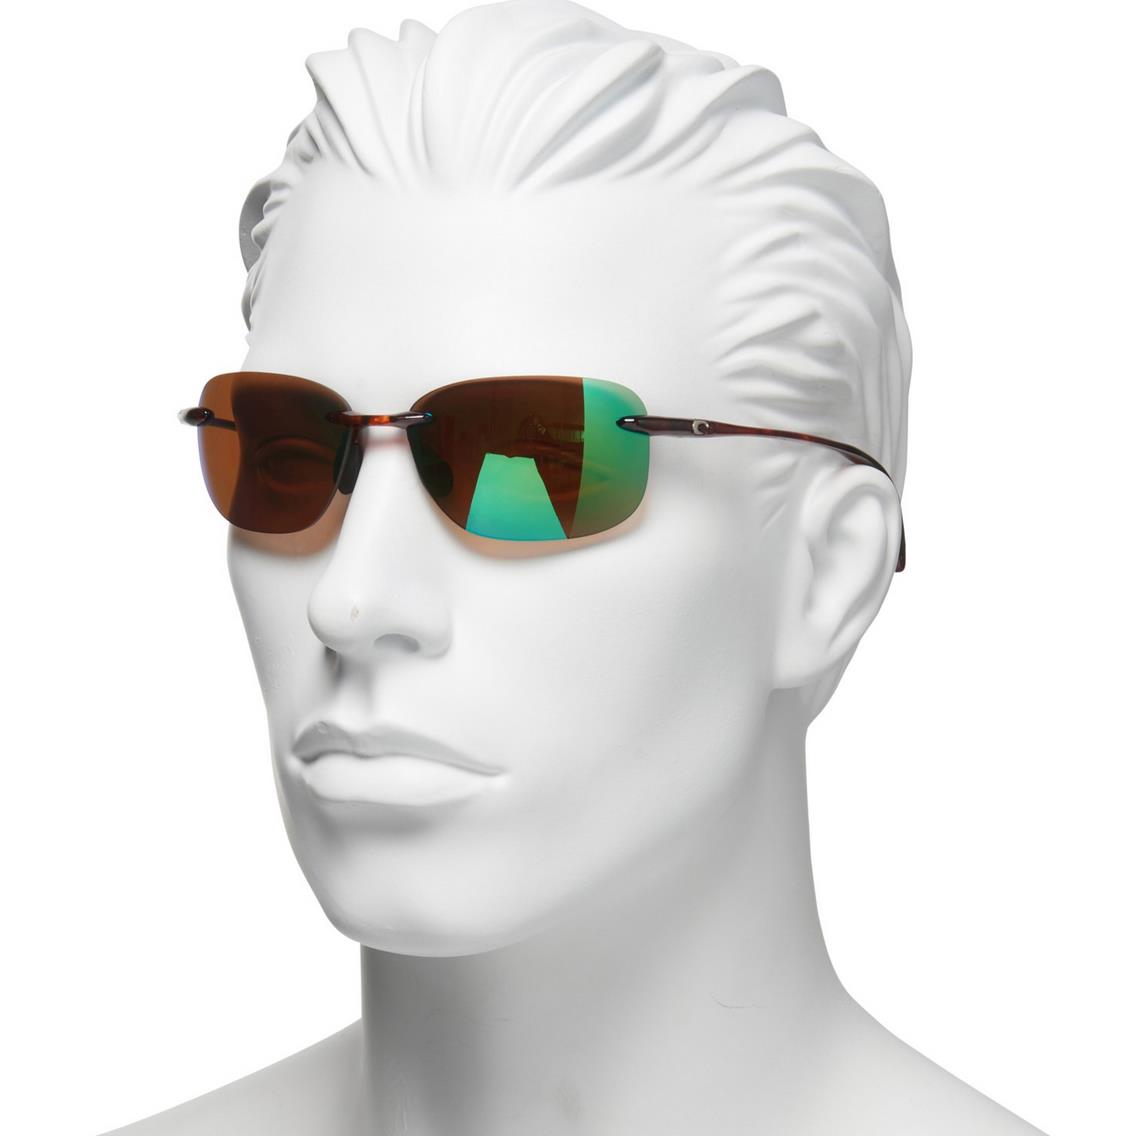 Costa For Men Women Seagrove Sunglasses - Polarized 580G Lenses